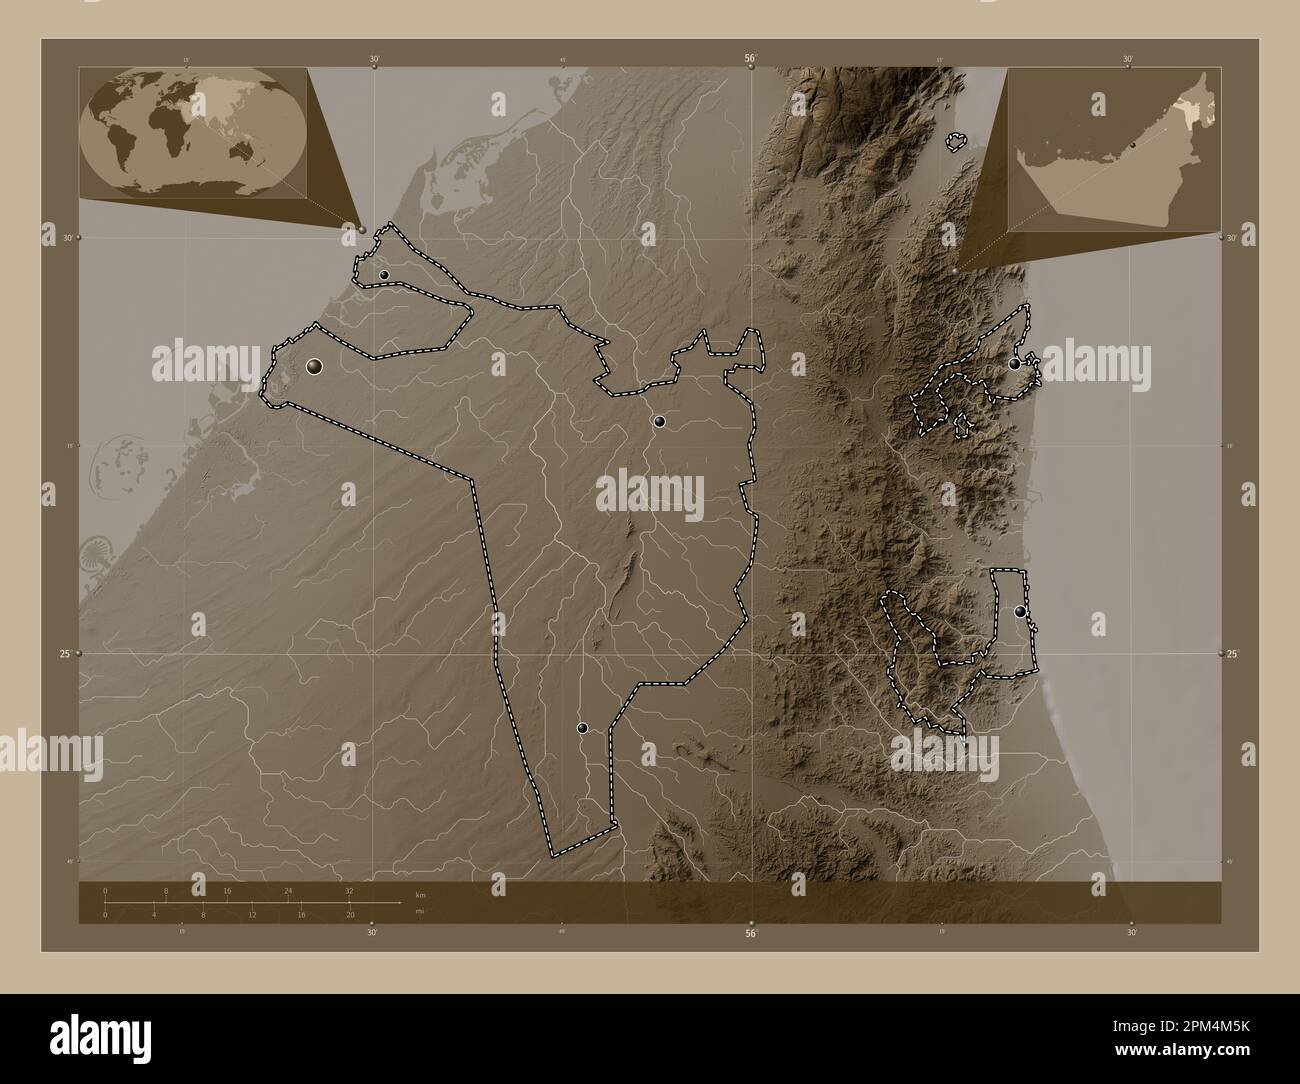 Sharjah, emirato degli Emirati Arabi Uniti. Mappa dell'altitudine colorata in tonalità seppia con laghi e fiumi. Posizioni delle principali città della regione. Angolo Foto Stock